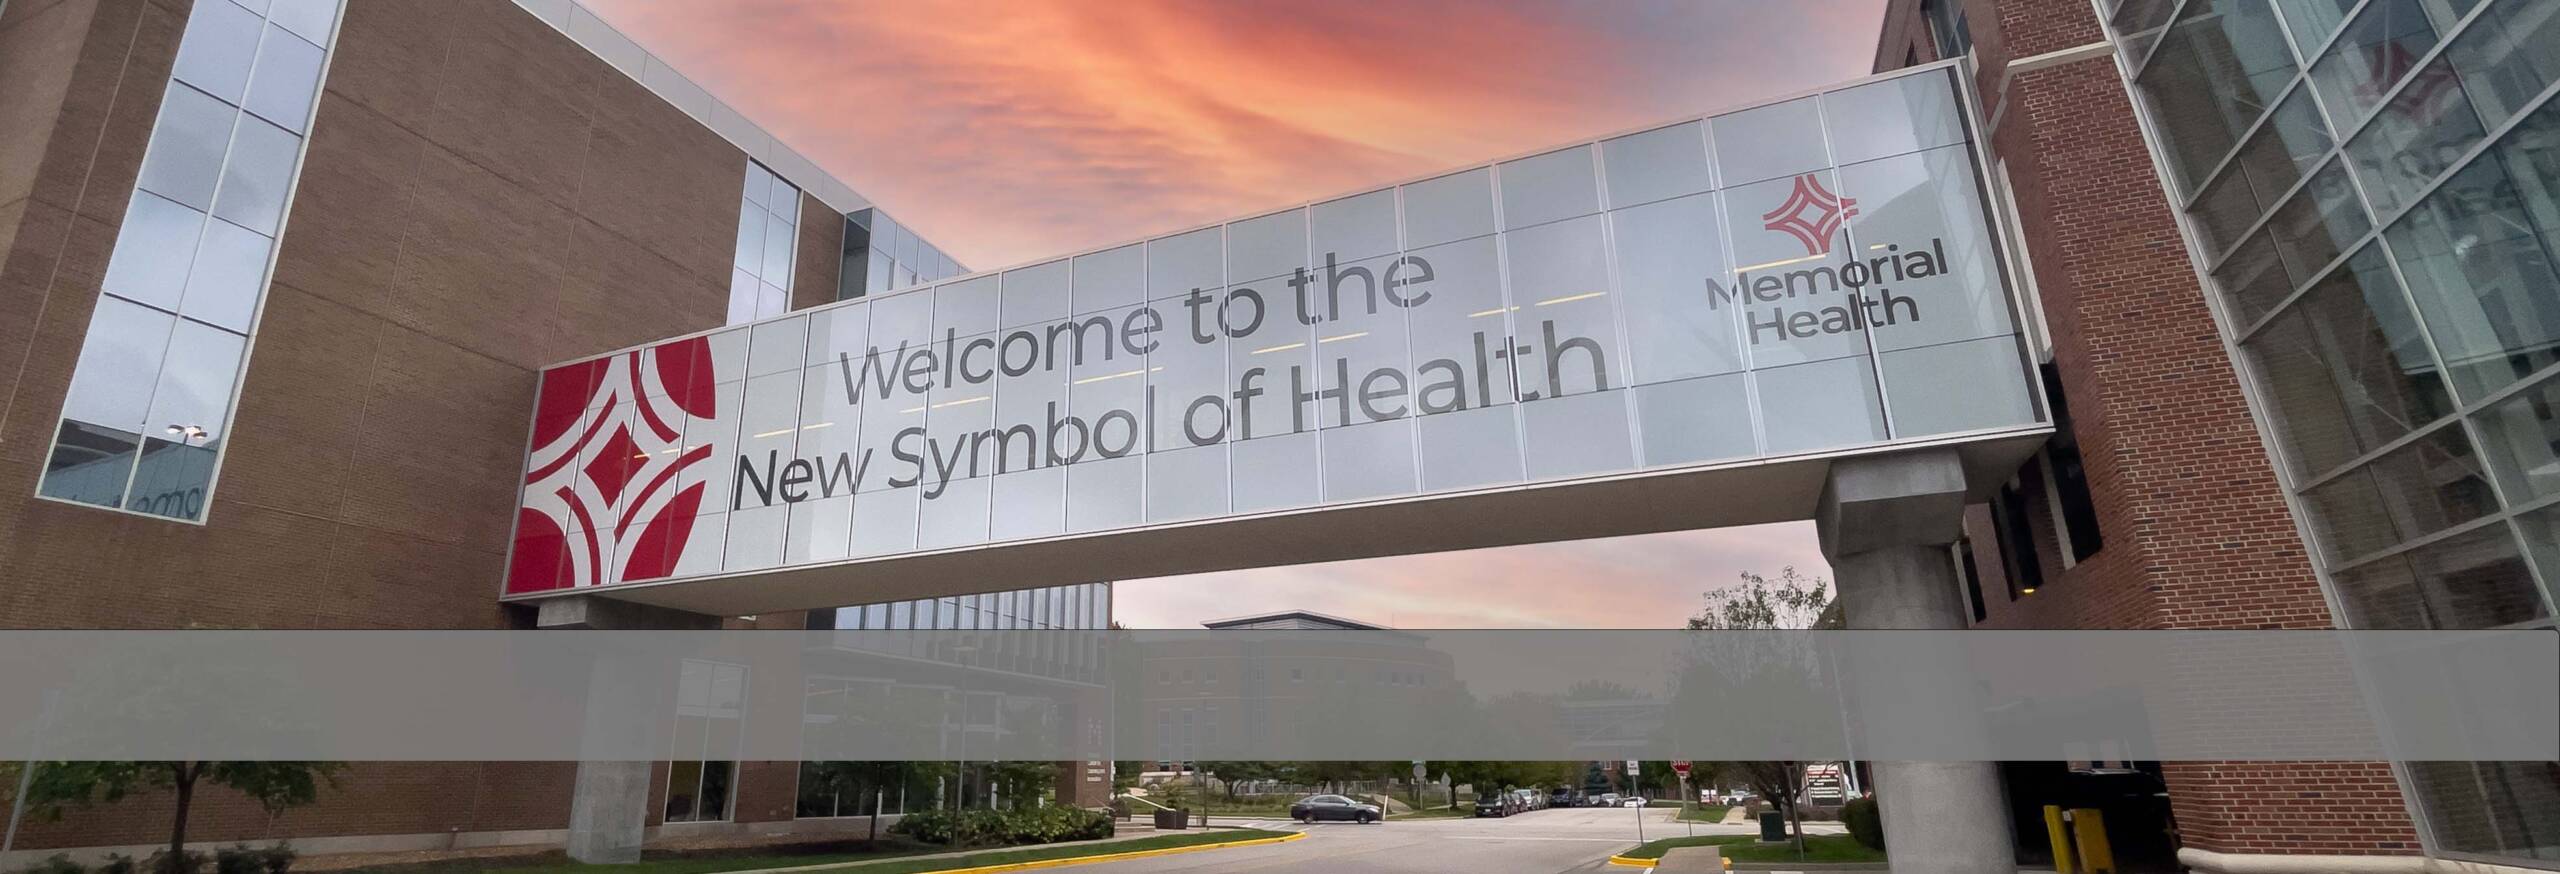 Memorial Health Rebrand Skywalk